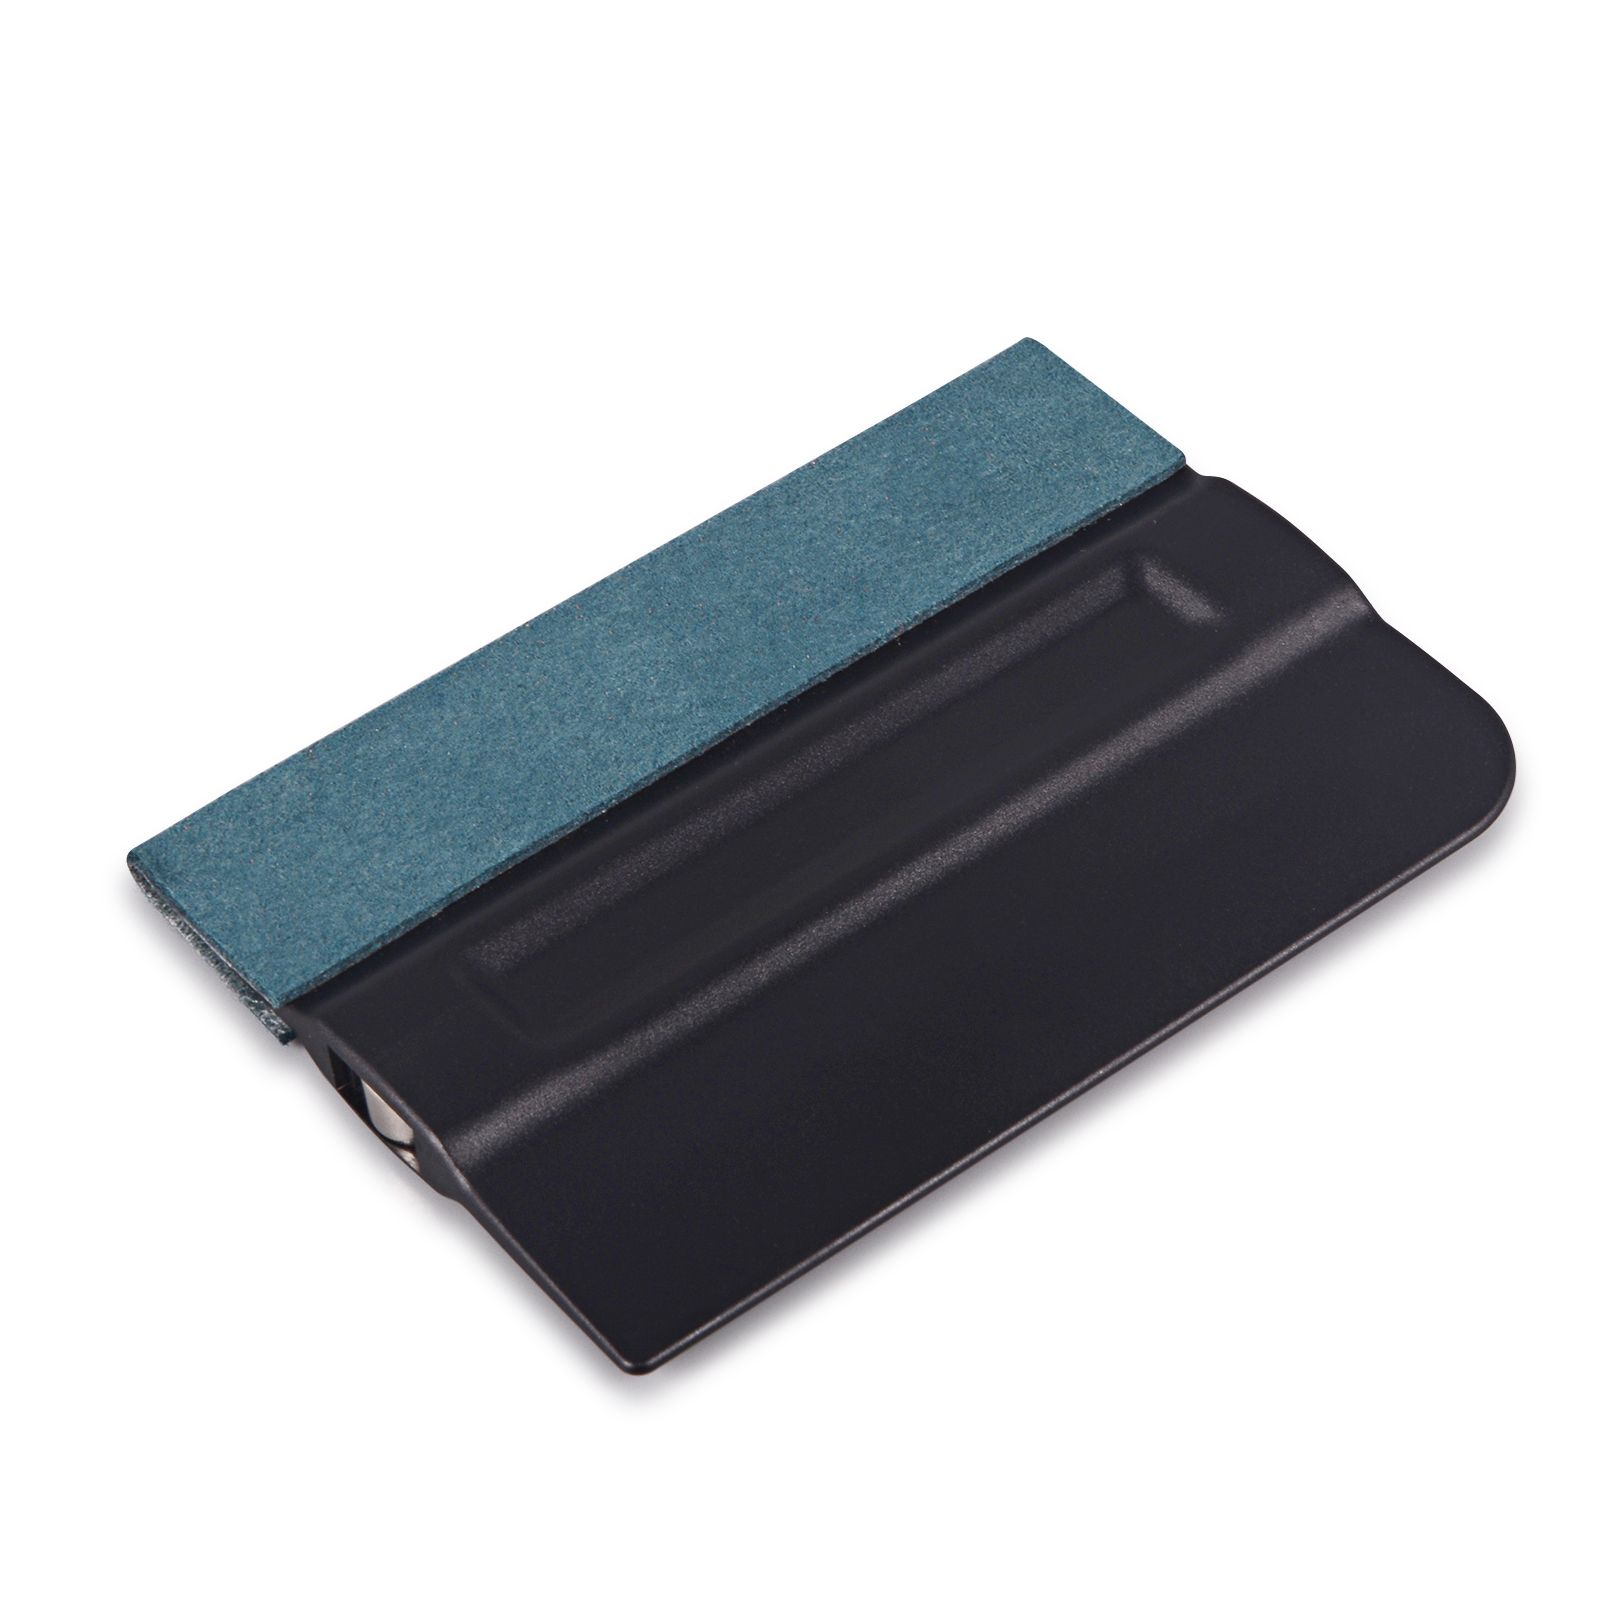 Foshio 5 stk carbon fiber vinyl wrap film bil magnet holder magnetisk gummiskraber farvet skraber bil klistermærke indpakning installer fixer